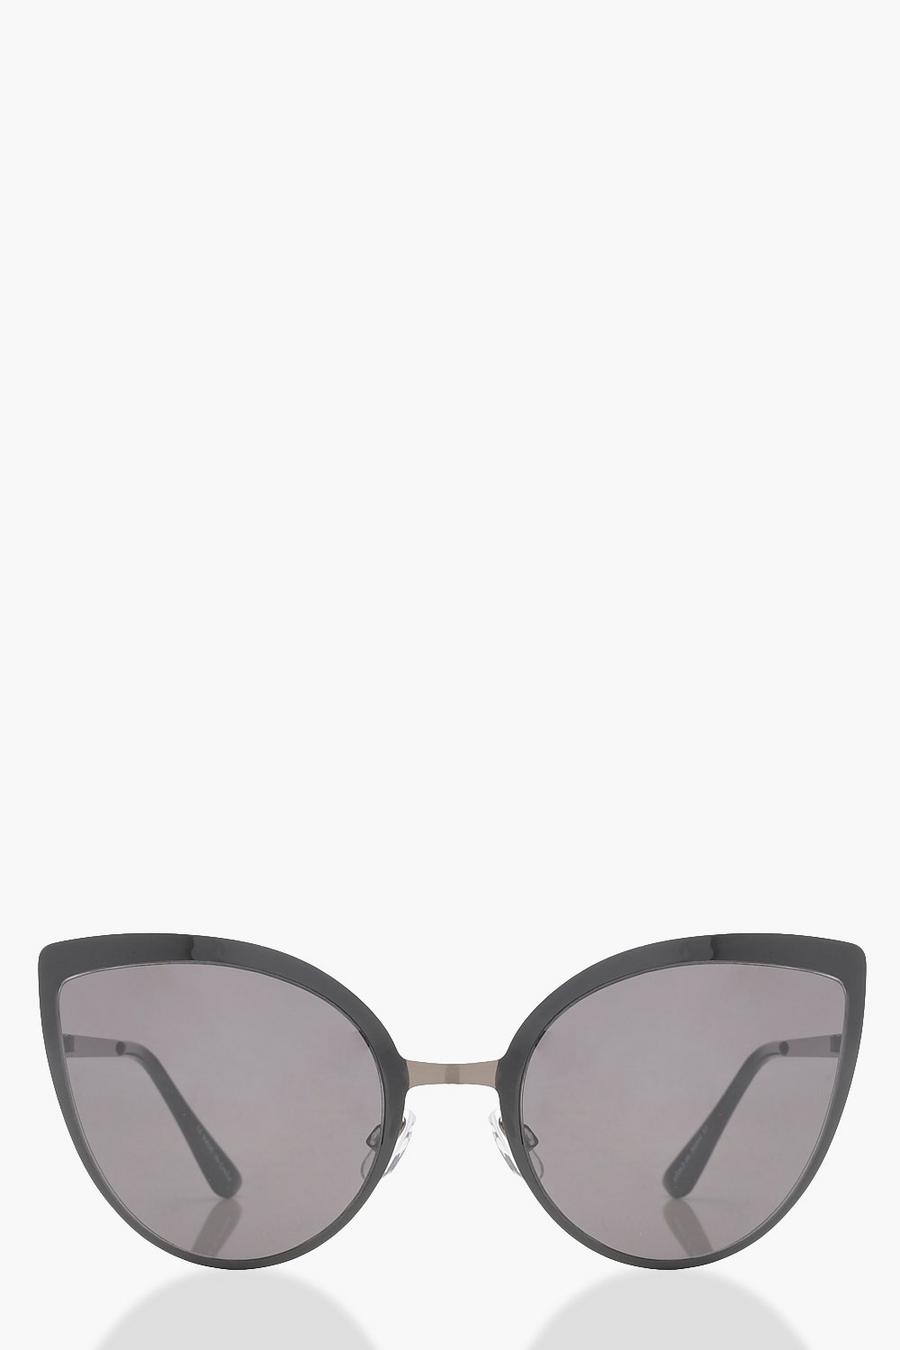 Black Oversized Smoke Cat Eye Sunglasses image number 1